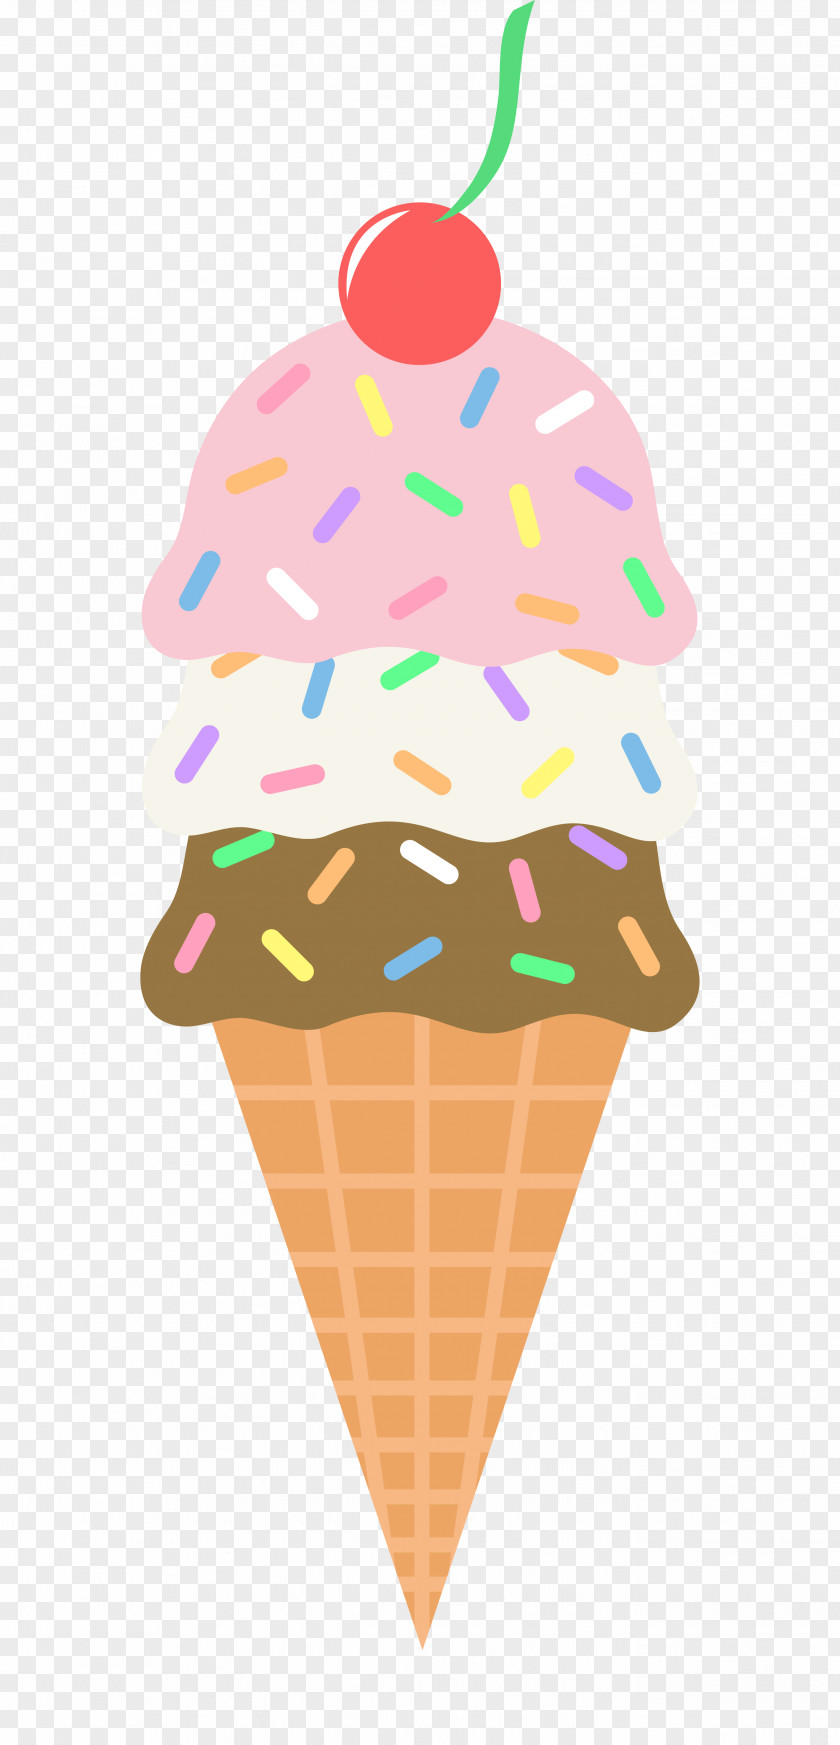 Icecream Cliparts Ice Cream Cone Sundae Neapolitan PNG